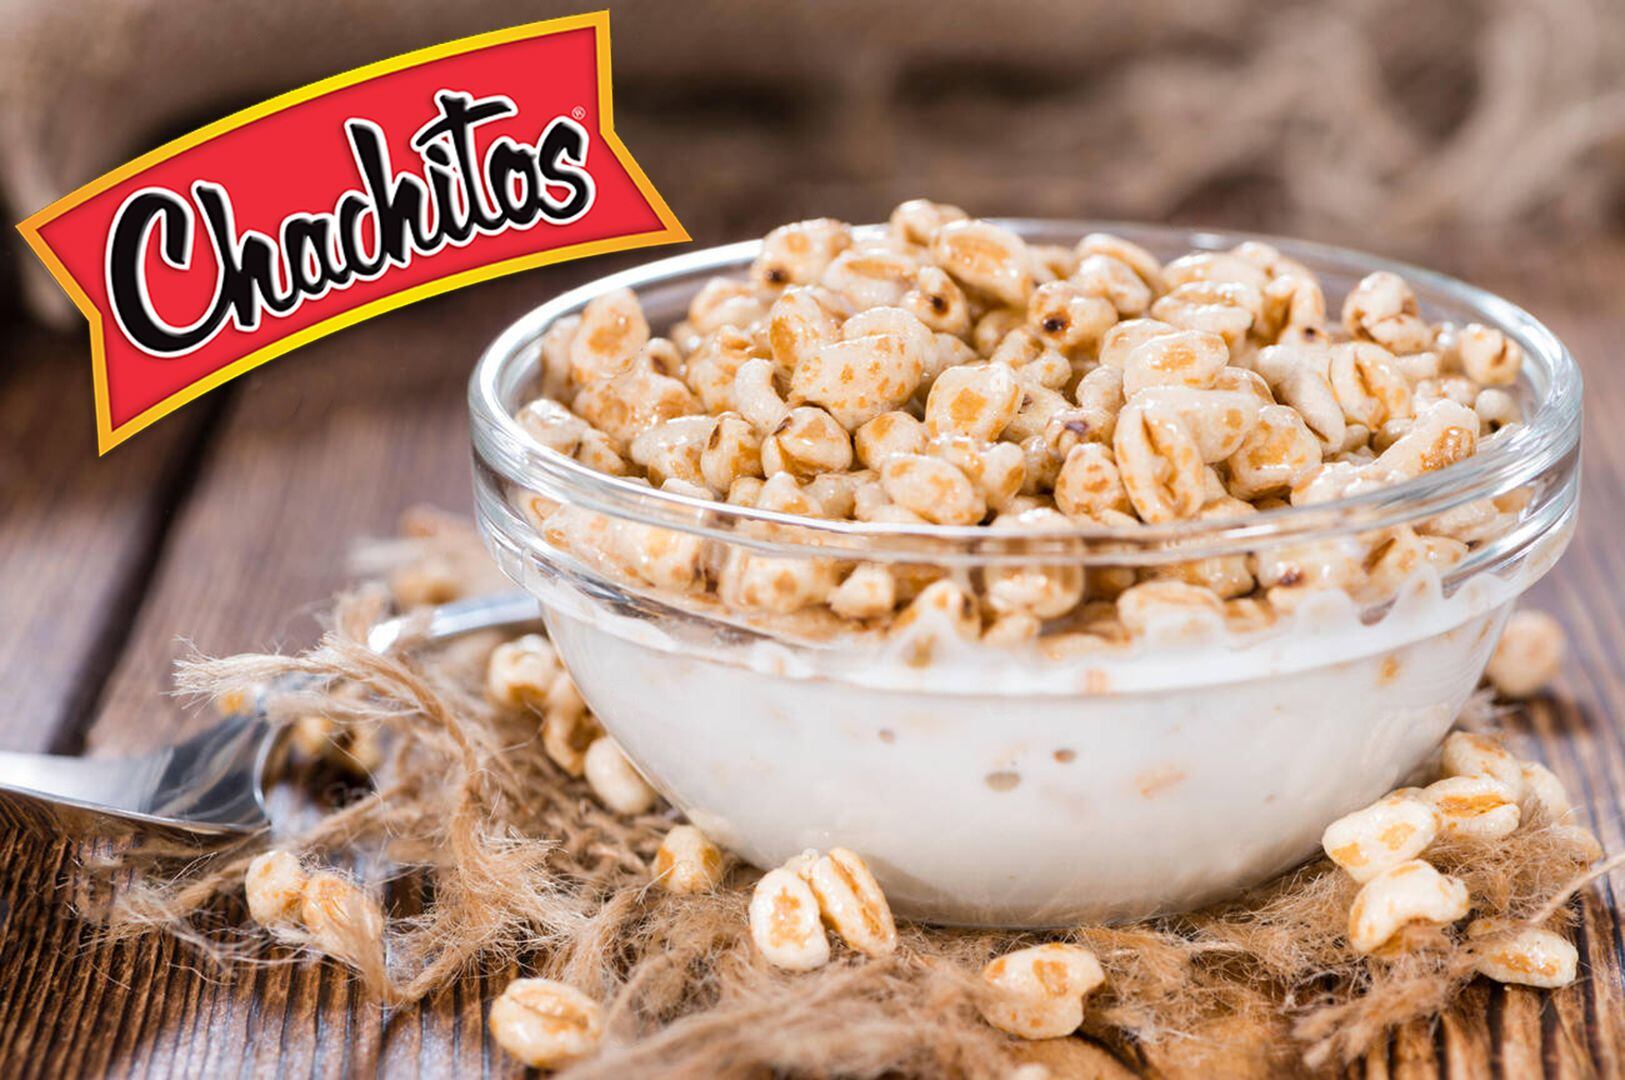 Los 'Chachitos' son considerados como uno de los mejores cereales, según Profeco. (Foto: Especial)